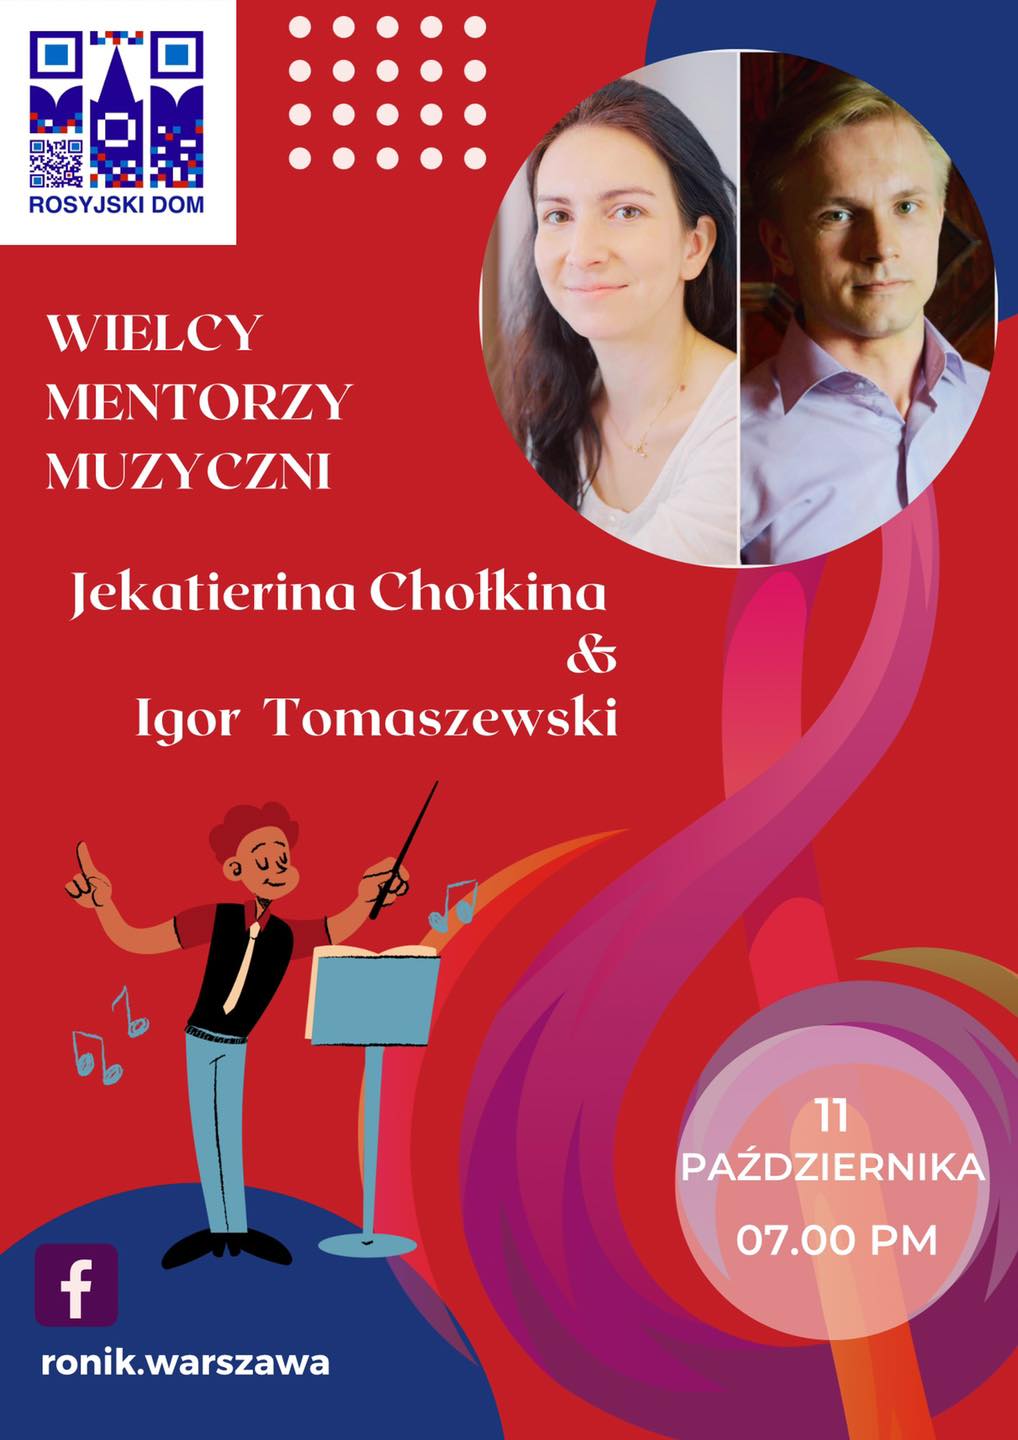 "Wielcy mentorzy muzyczni". Jekatierina Chołkina & Igor Tomaszewski